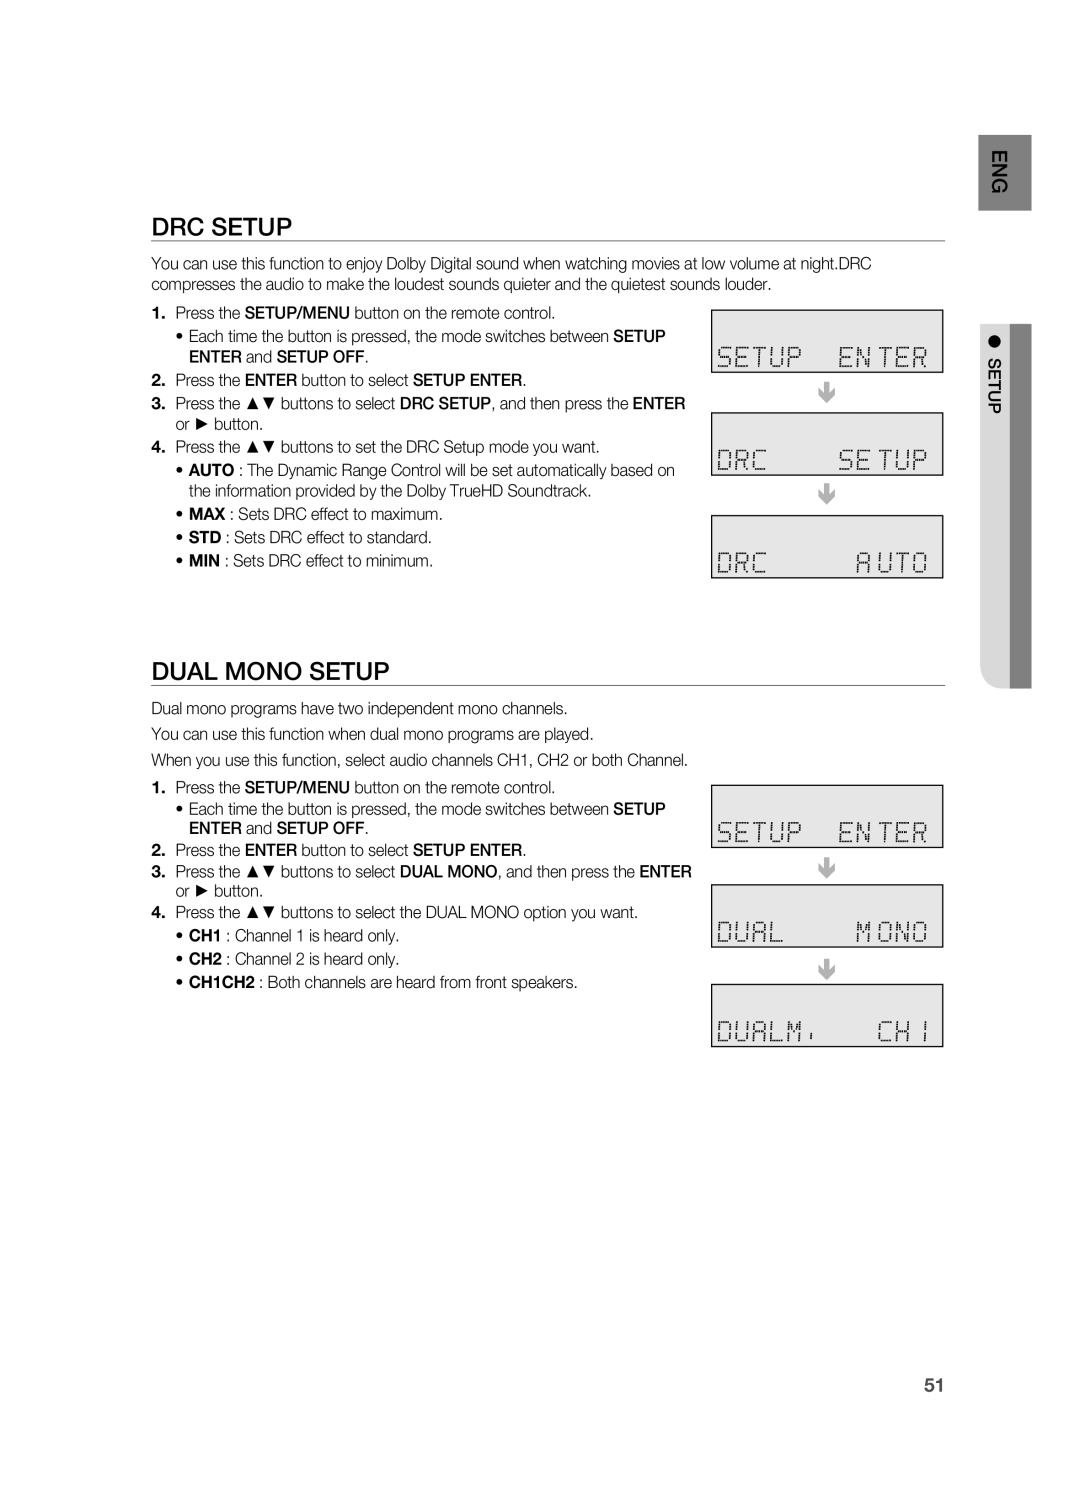 Samsung HW-C900-XAA user manual Drc Setup, Dual Mono Setup 